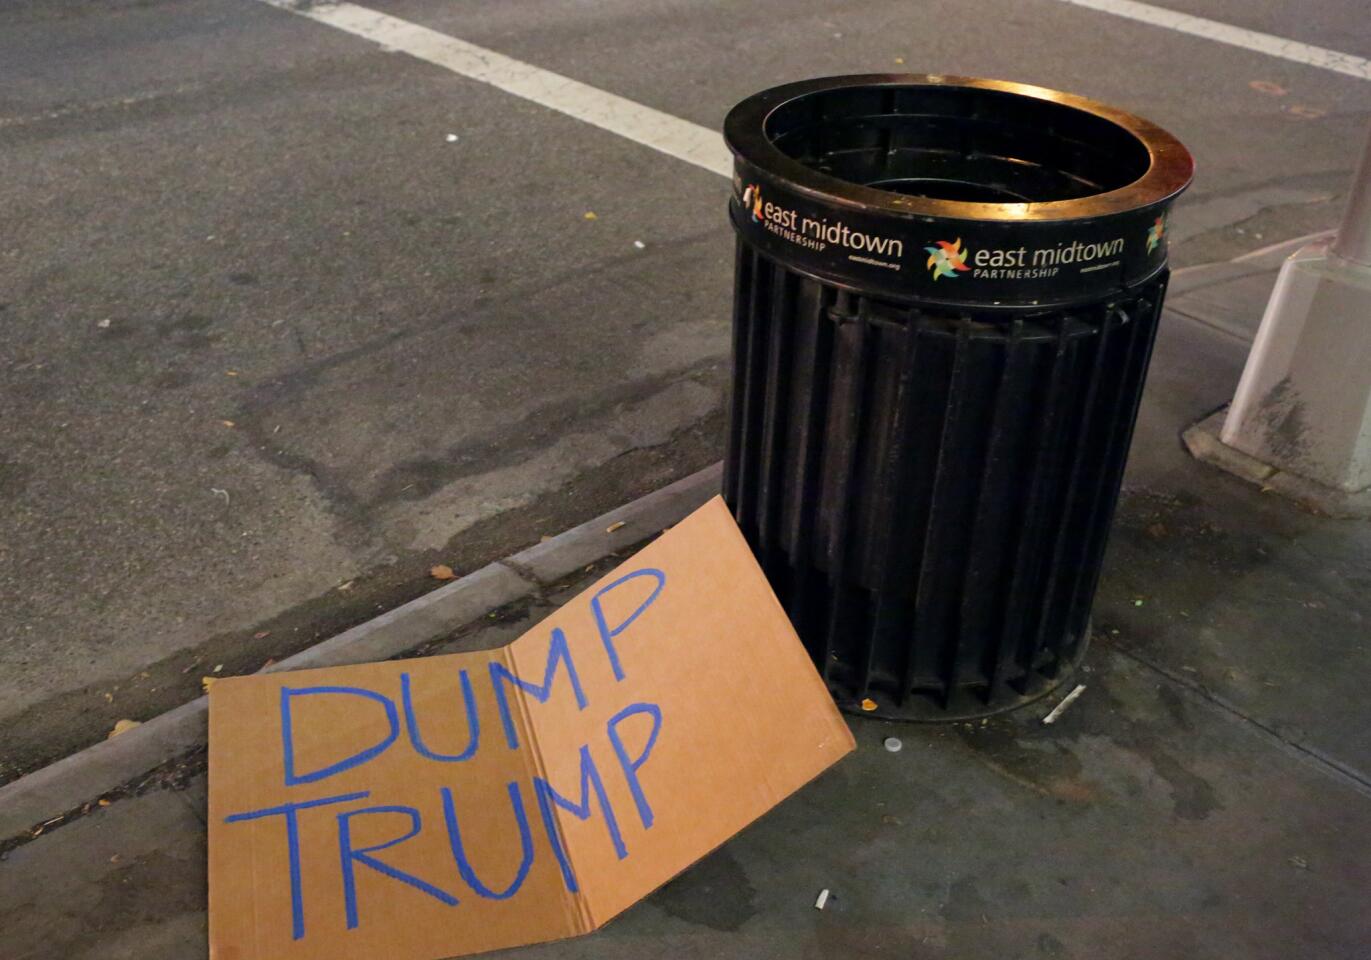 Donald Trump protests